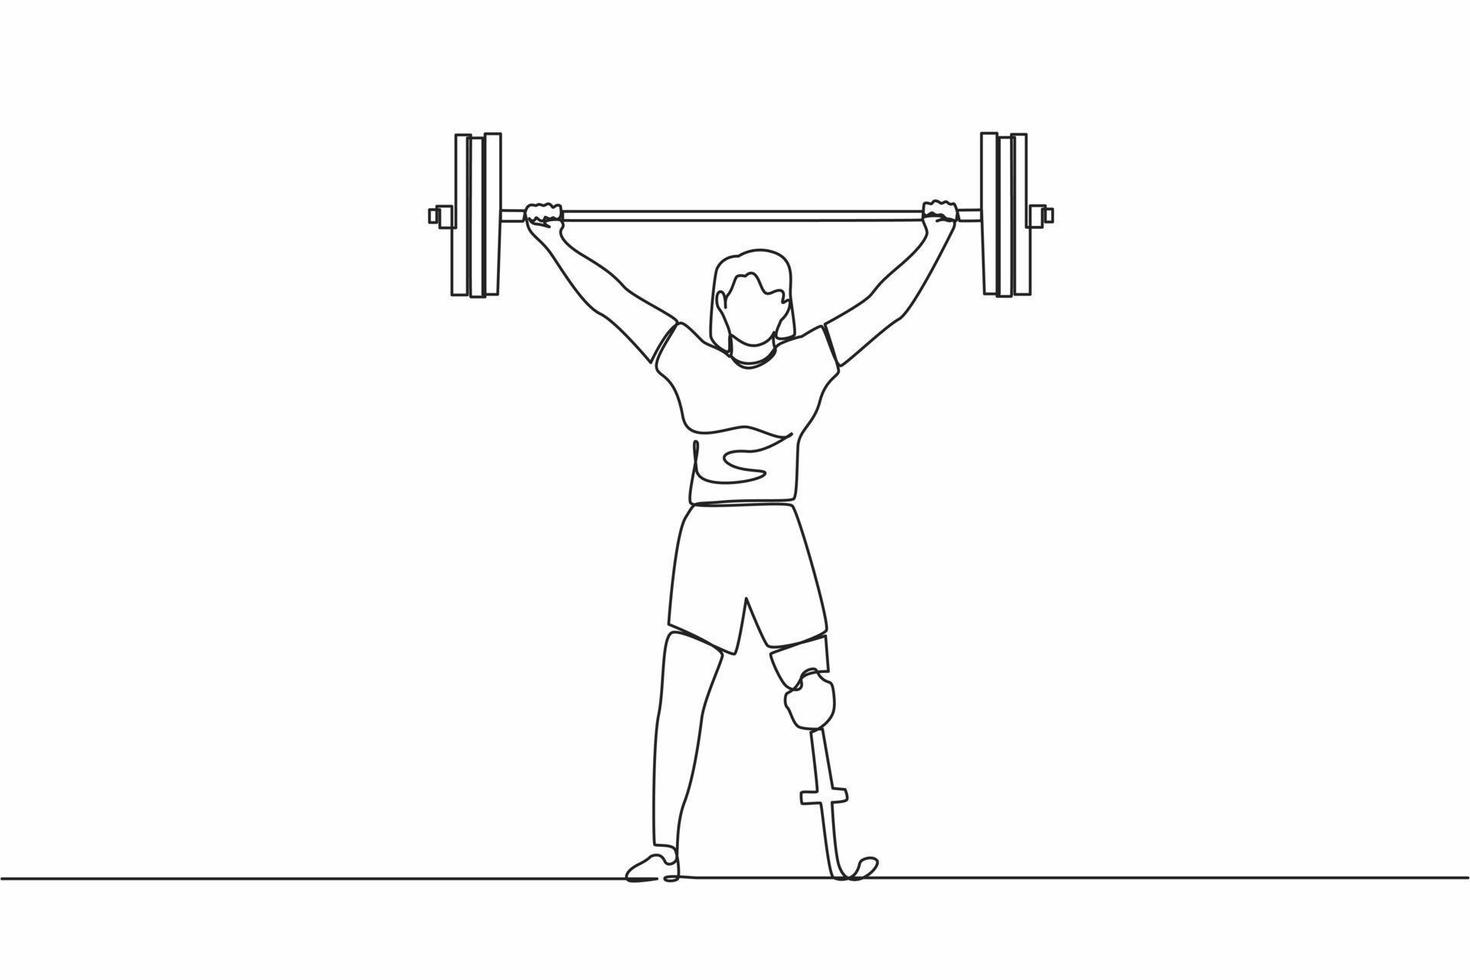 kontinuierliche eine Linie, die stark behinderte Bodybuilder-Sportlerin zeichnet, die schwere Langhanteln über ihren Kopf hebt. Gewichthebersport für Behinderte. einzeiliges zeichnen design vektorgrafik illustration vektor